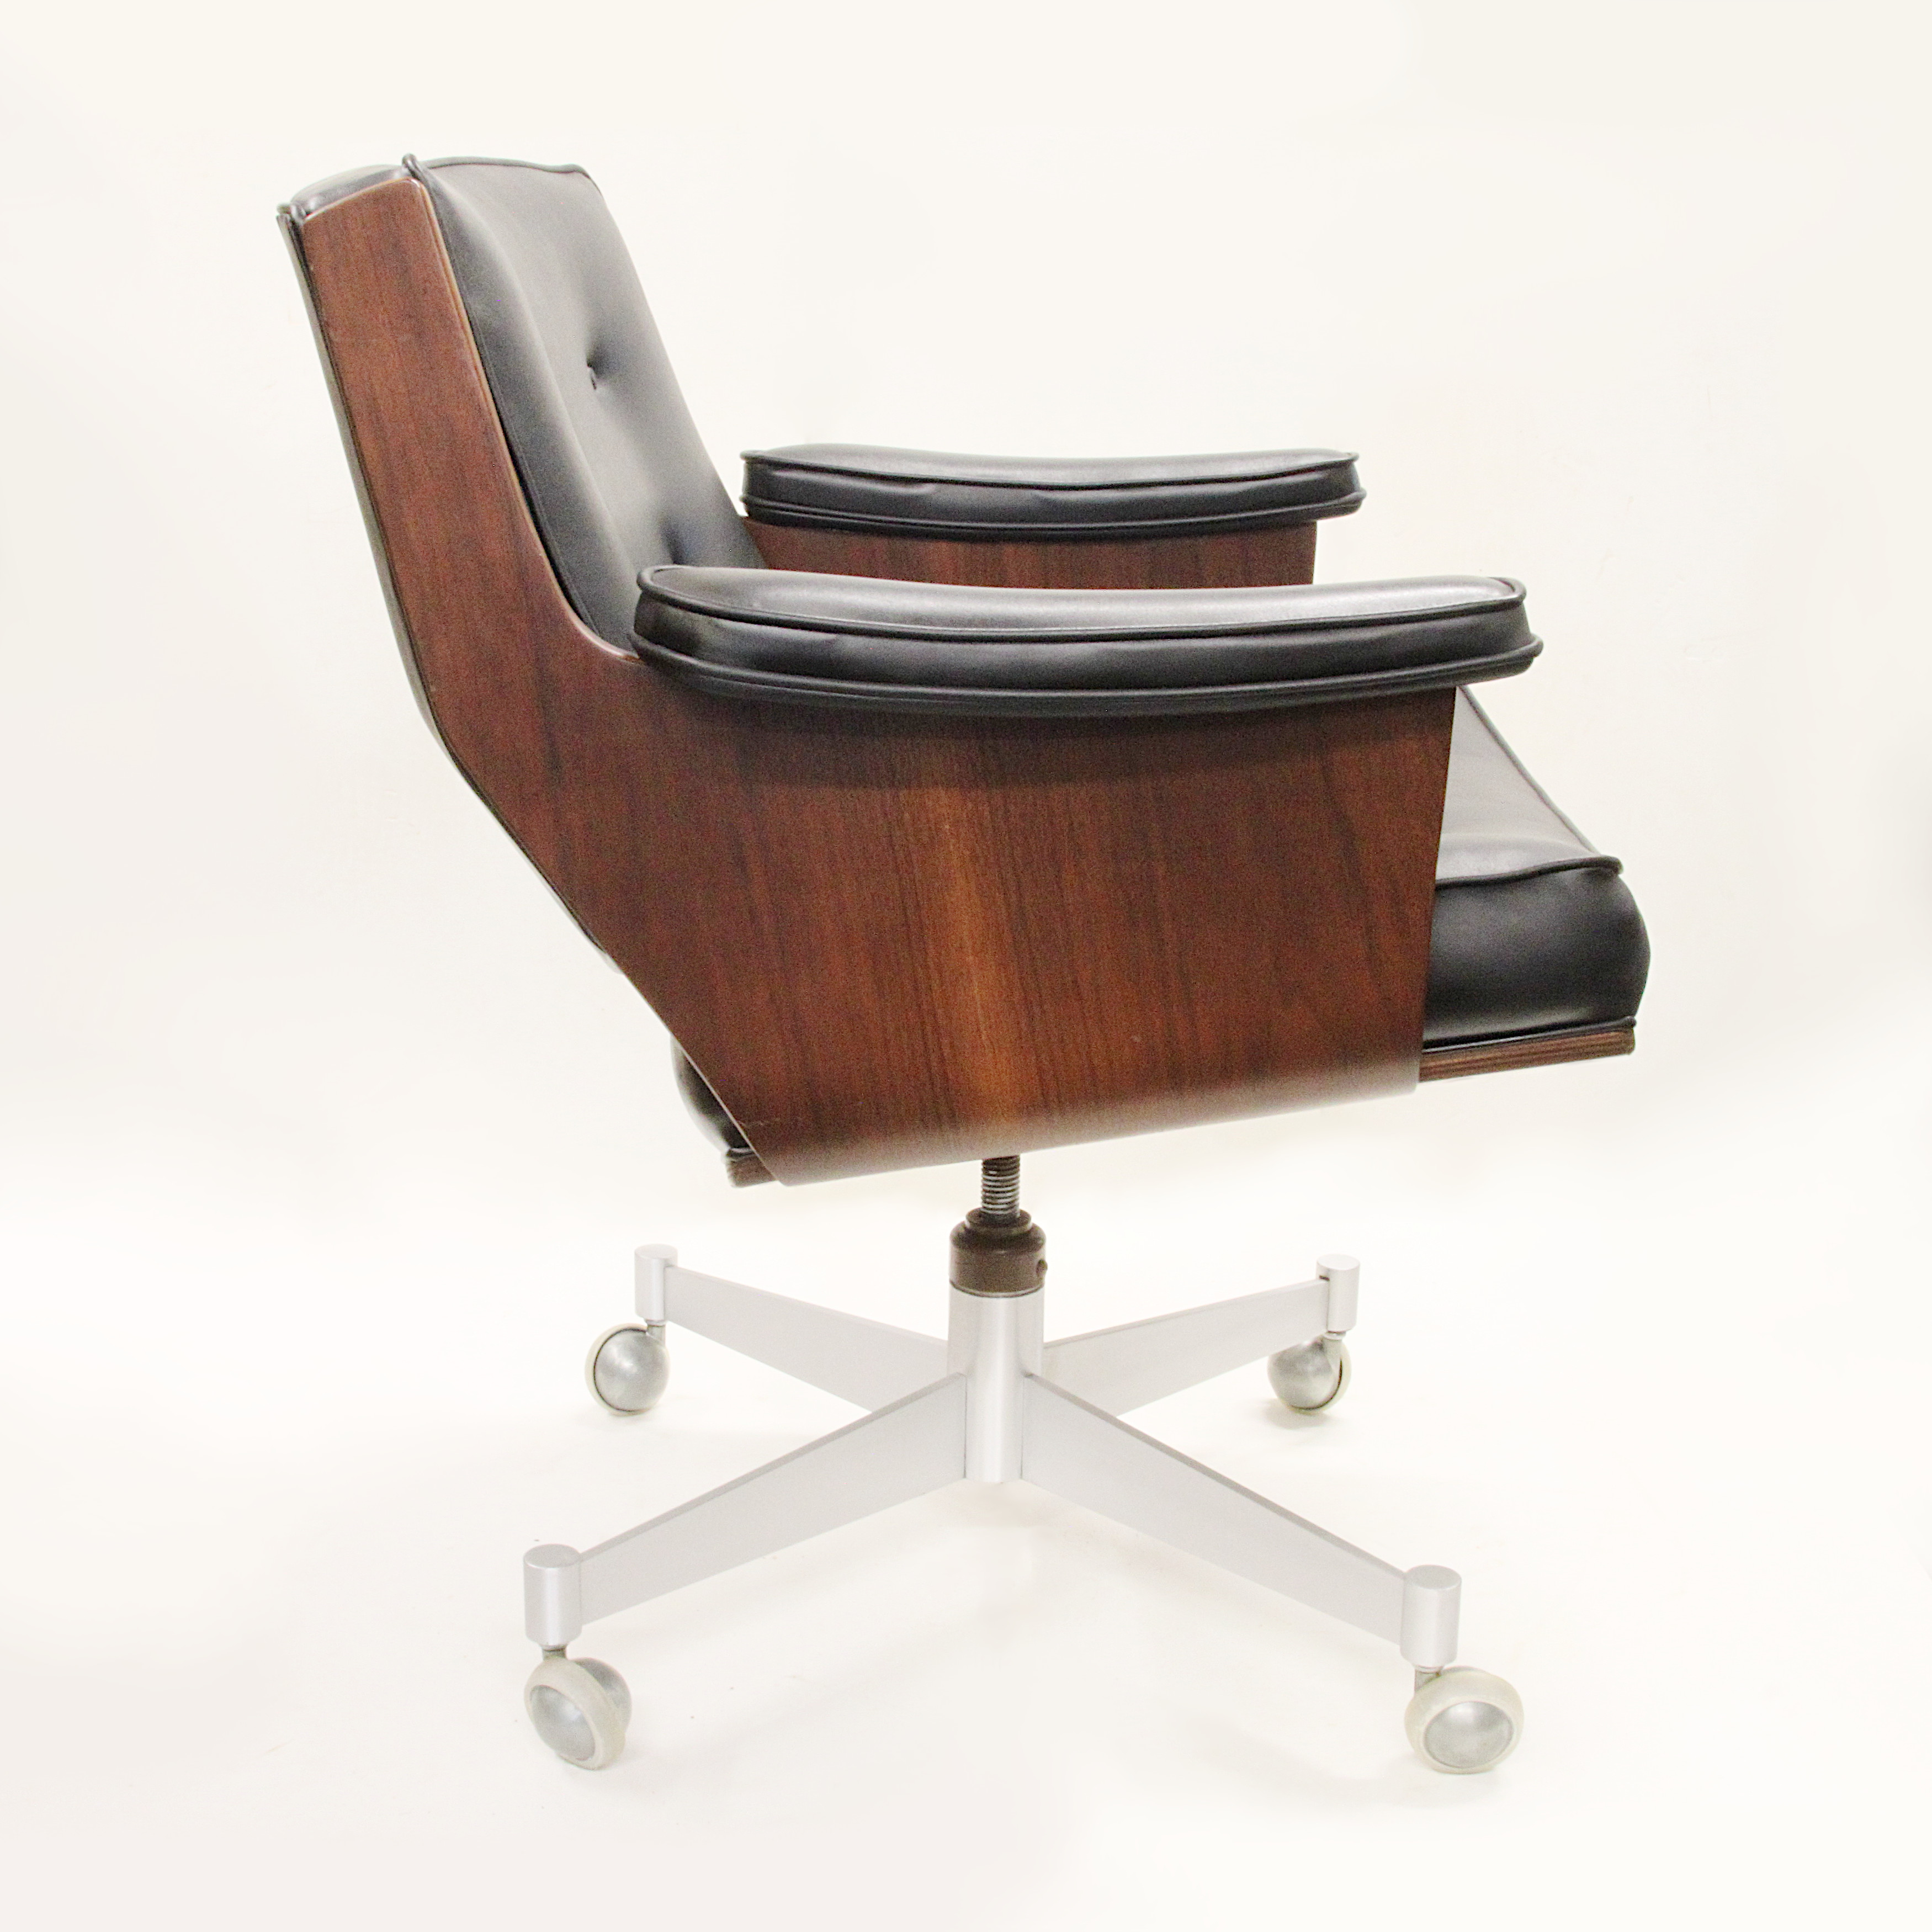 1657552564-Thonet-Molded-Plywood-Swivel-Desk-Chair-4.jpg